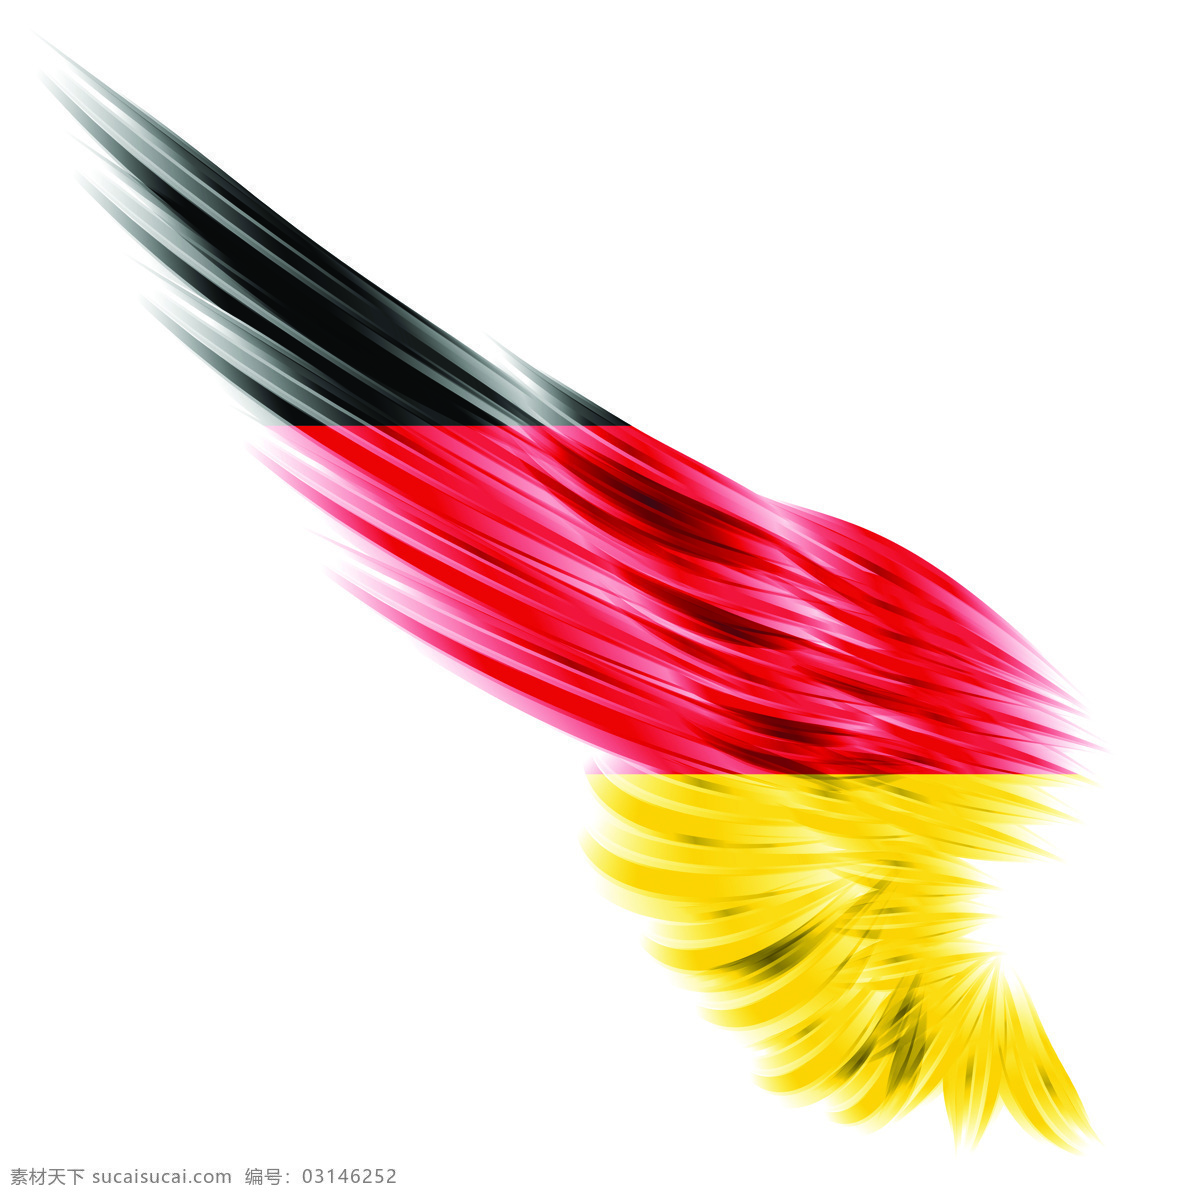 德国国旗 国旗 翅膀素材 德国 军队元素 国旗翅膀 其他图标 标志图标